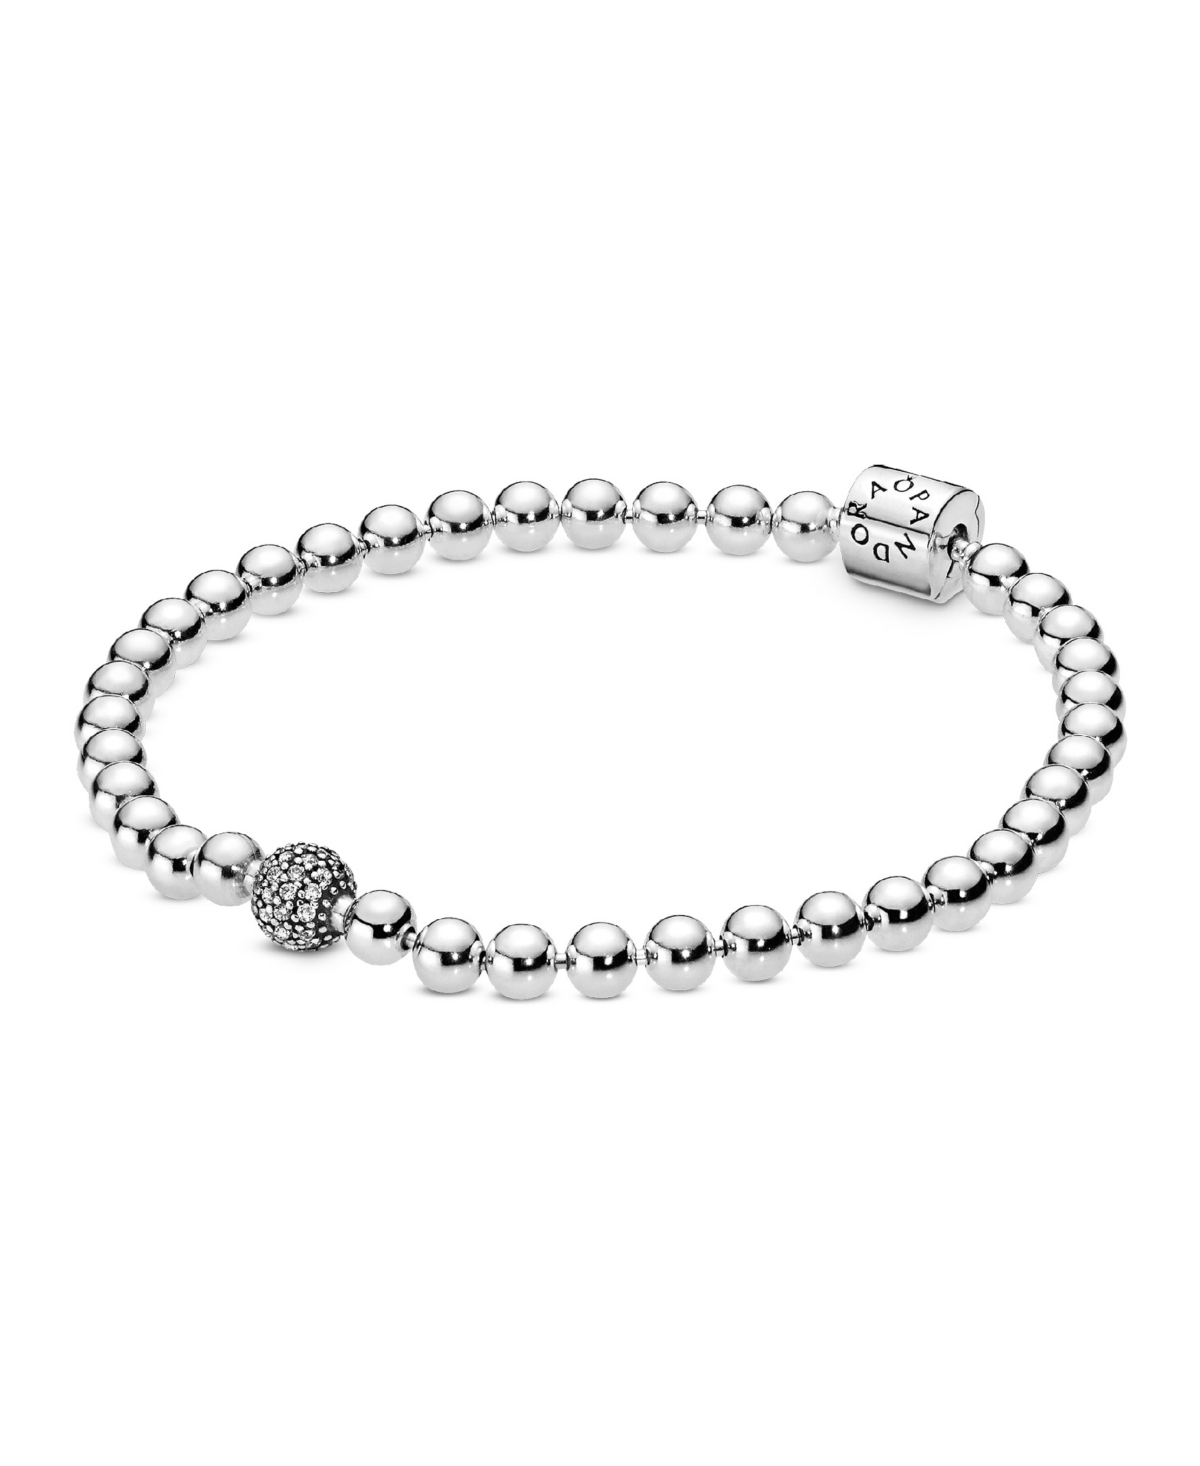 Pandora Sterling Silver Beads Pave Bracelet